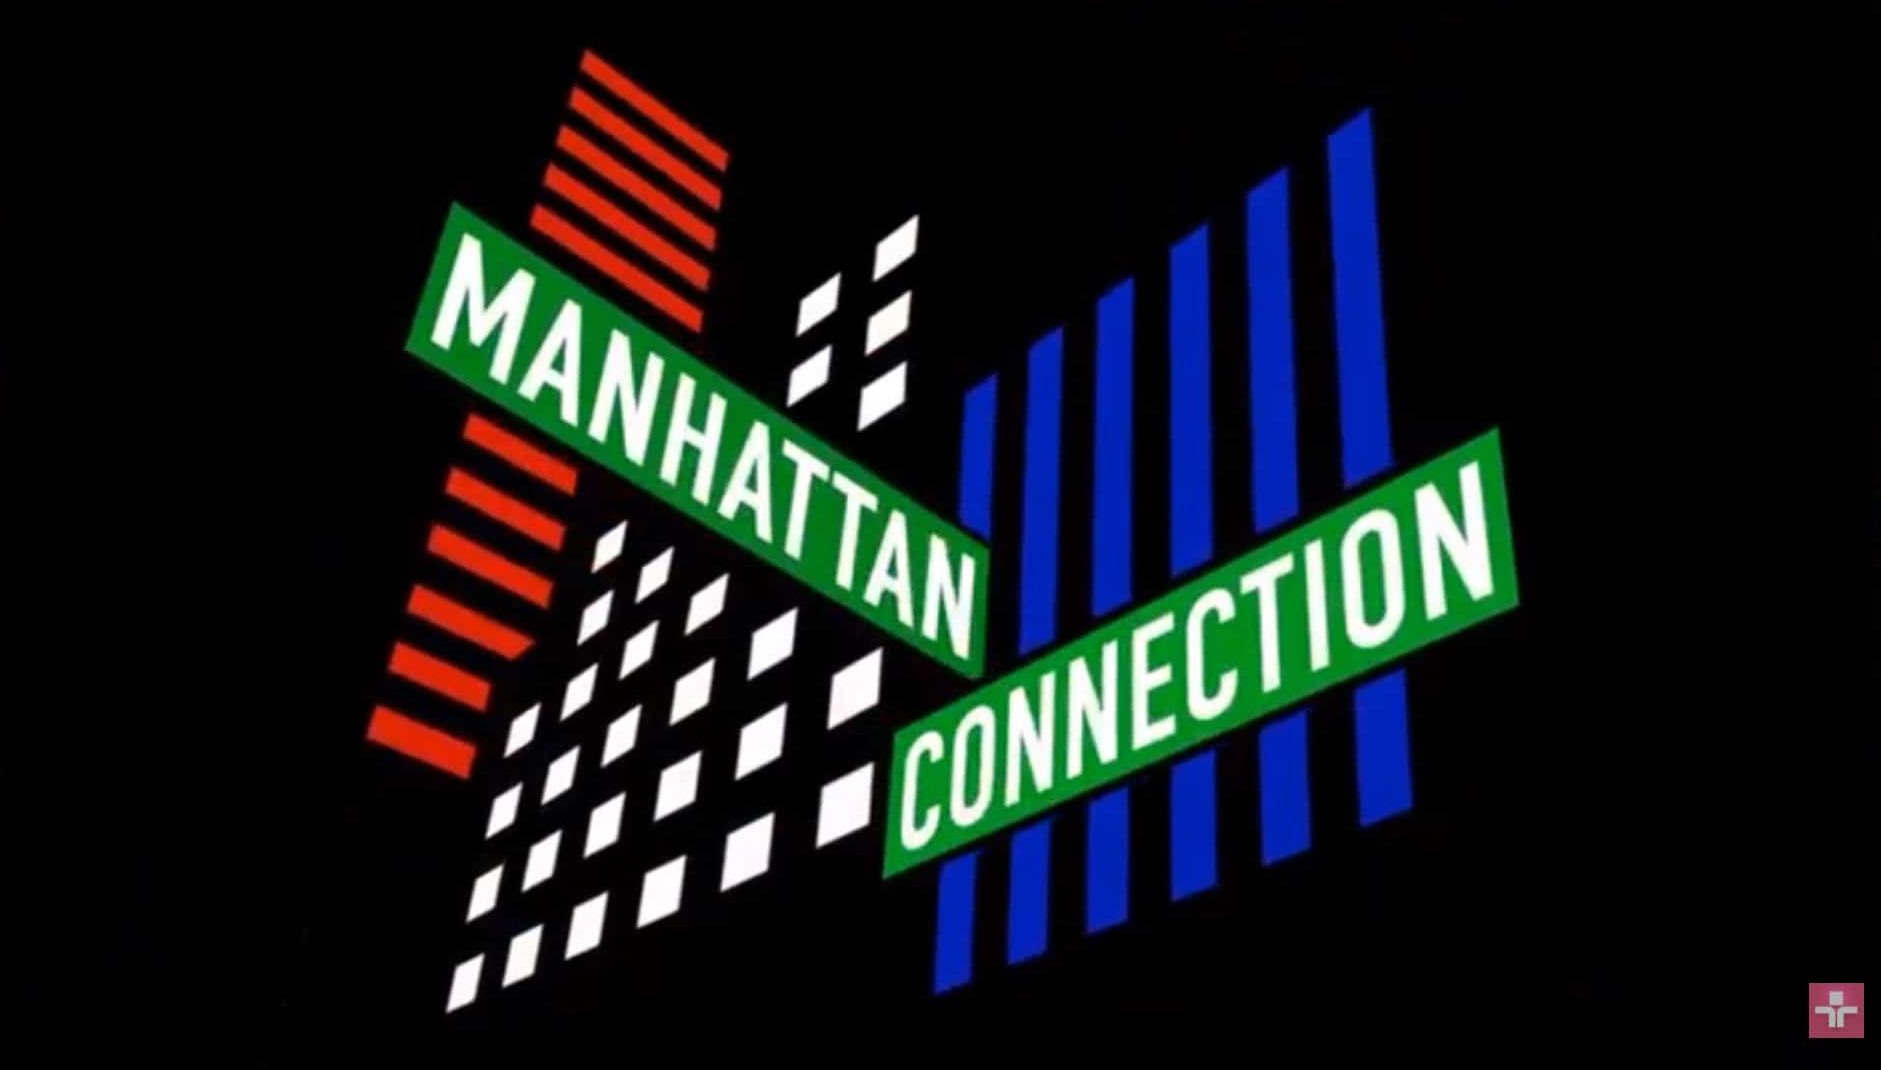 Manhattan Connection estreia na TV Cultura e entrevista FHC e Michel Temer